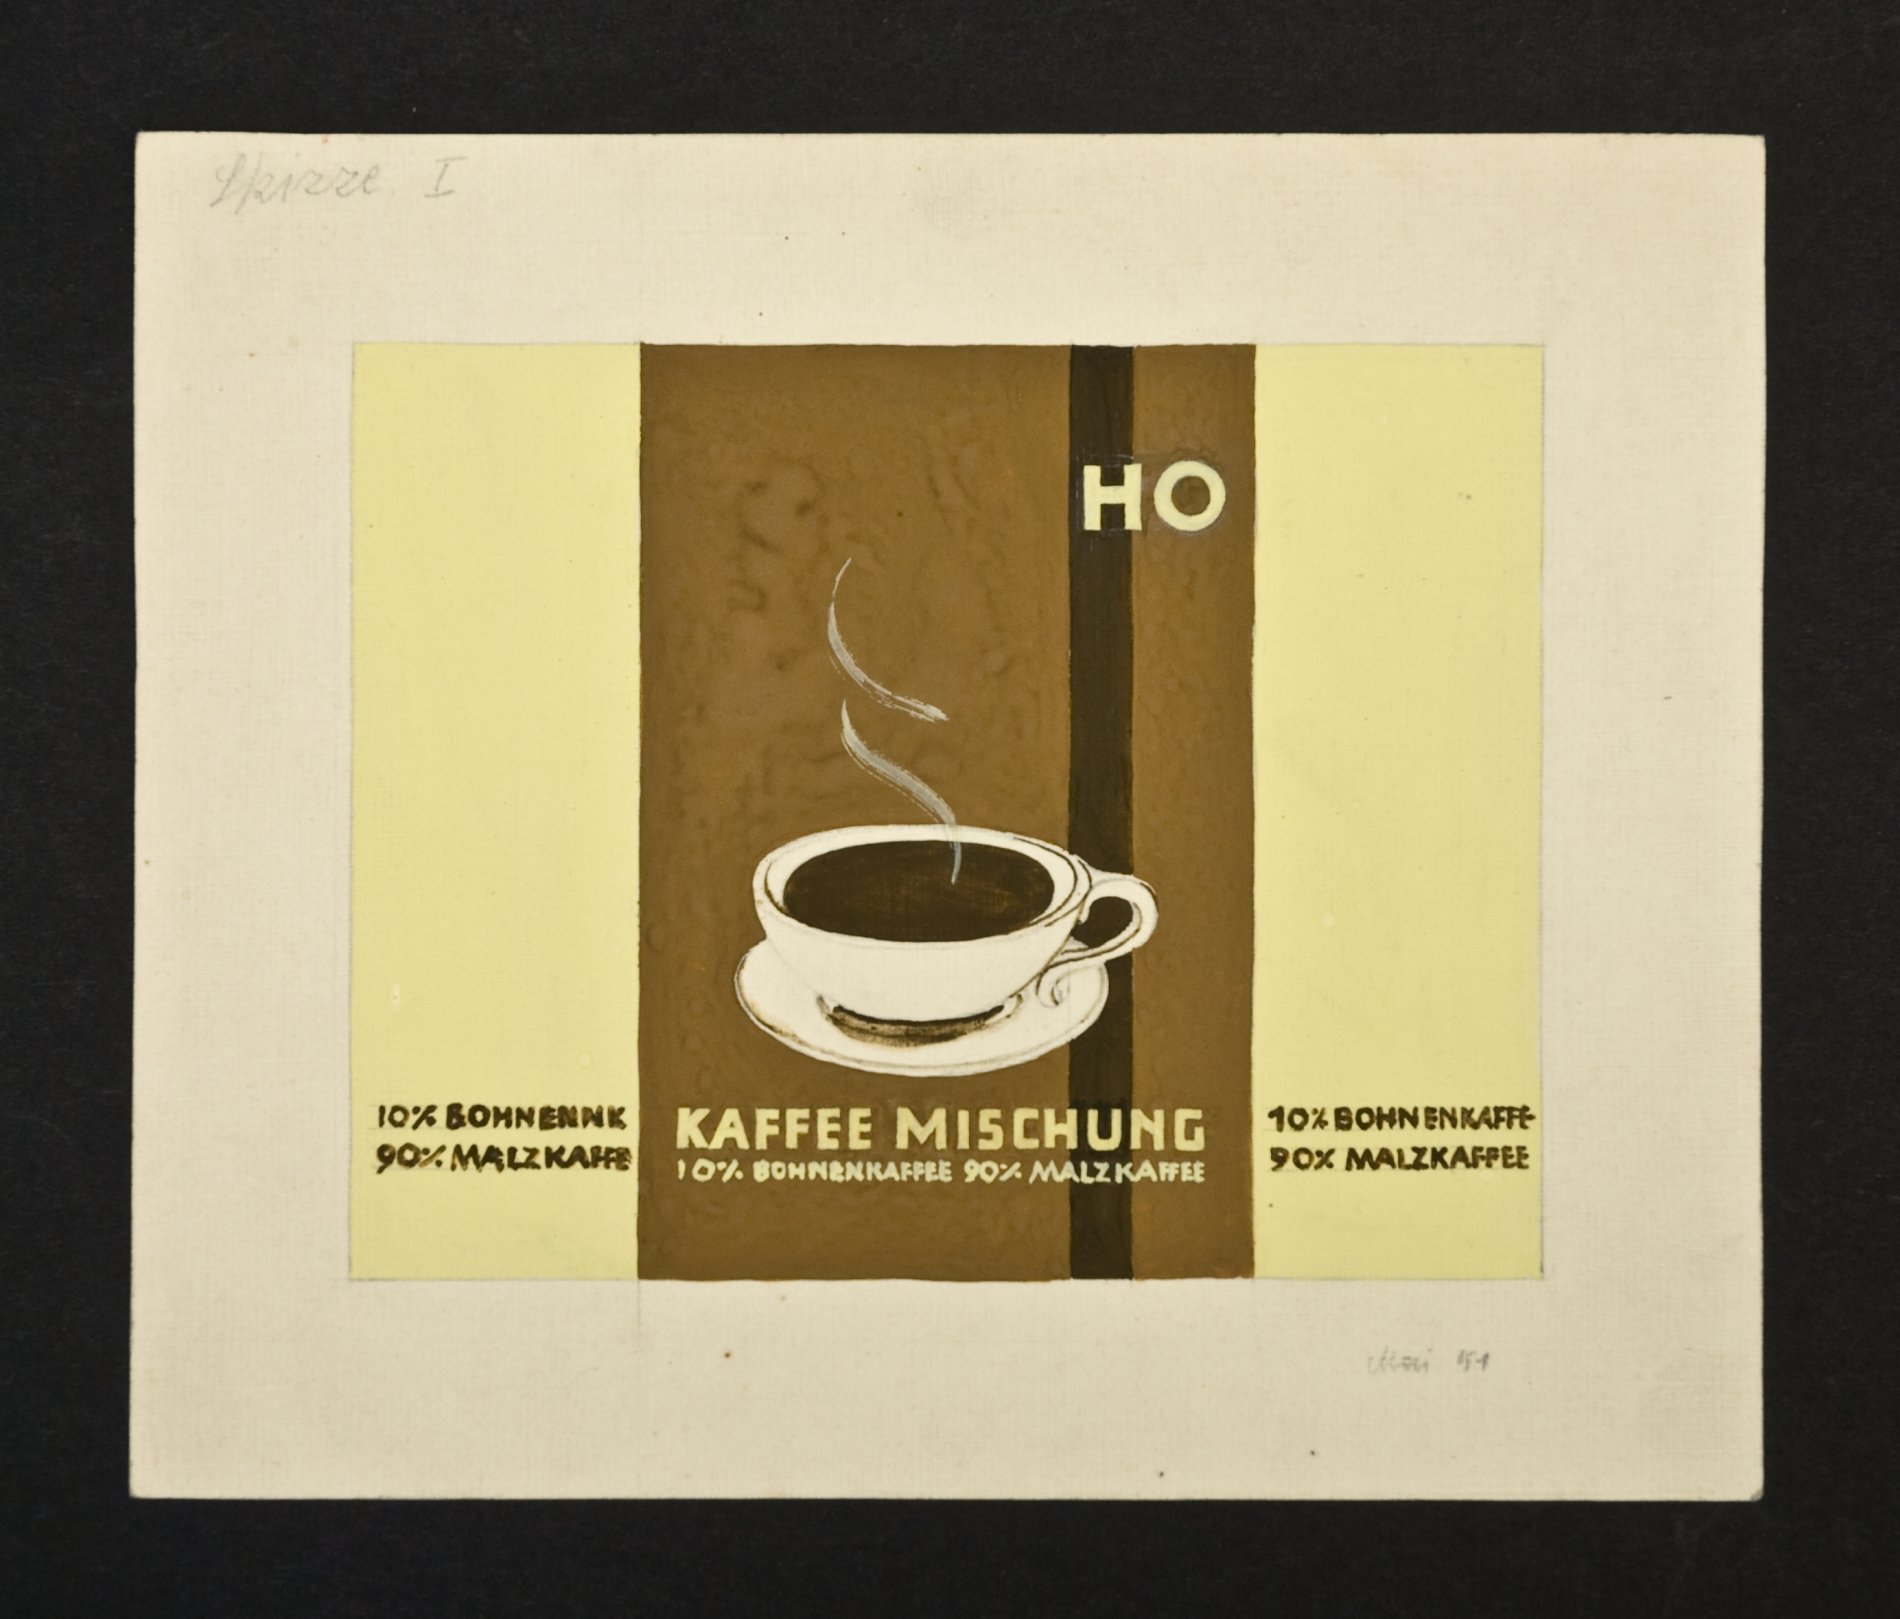 Reklameschild-Entwurf "HO Kaffeemischung" (Stiftung Domäne Dahlem - Landgut und Museum, Weiternutzung nur mit Genehmigung des Museums CC BY-NC-SA)